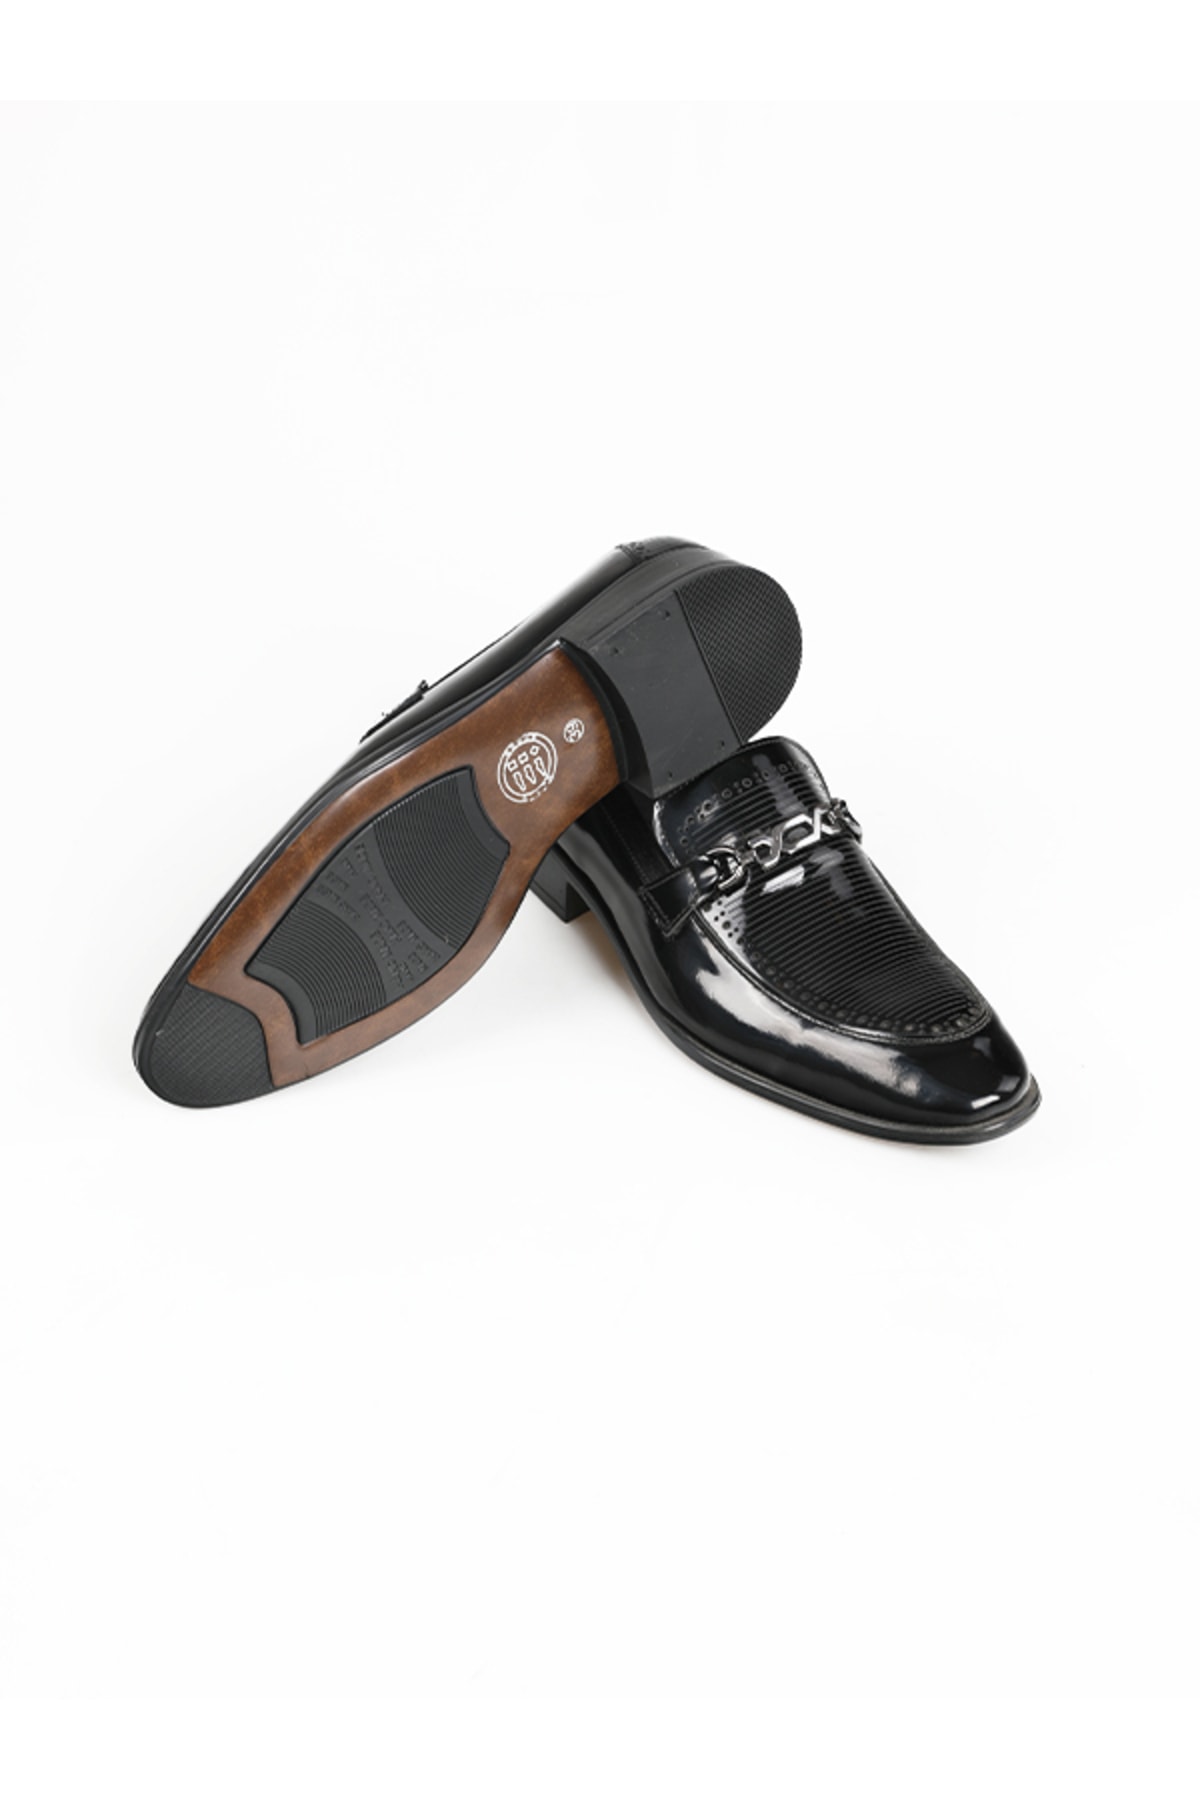 Calvano Hakiki Deri Siyah Erkek Klasik Ayakkabı Mt8080-black Shıny